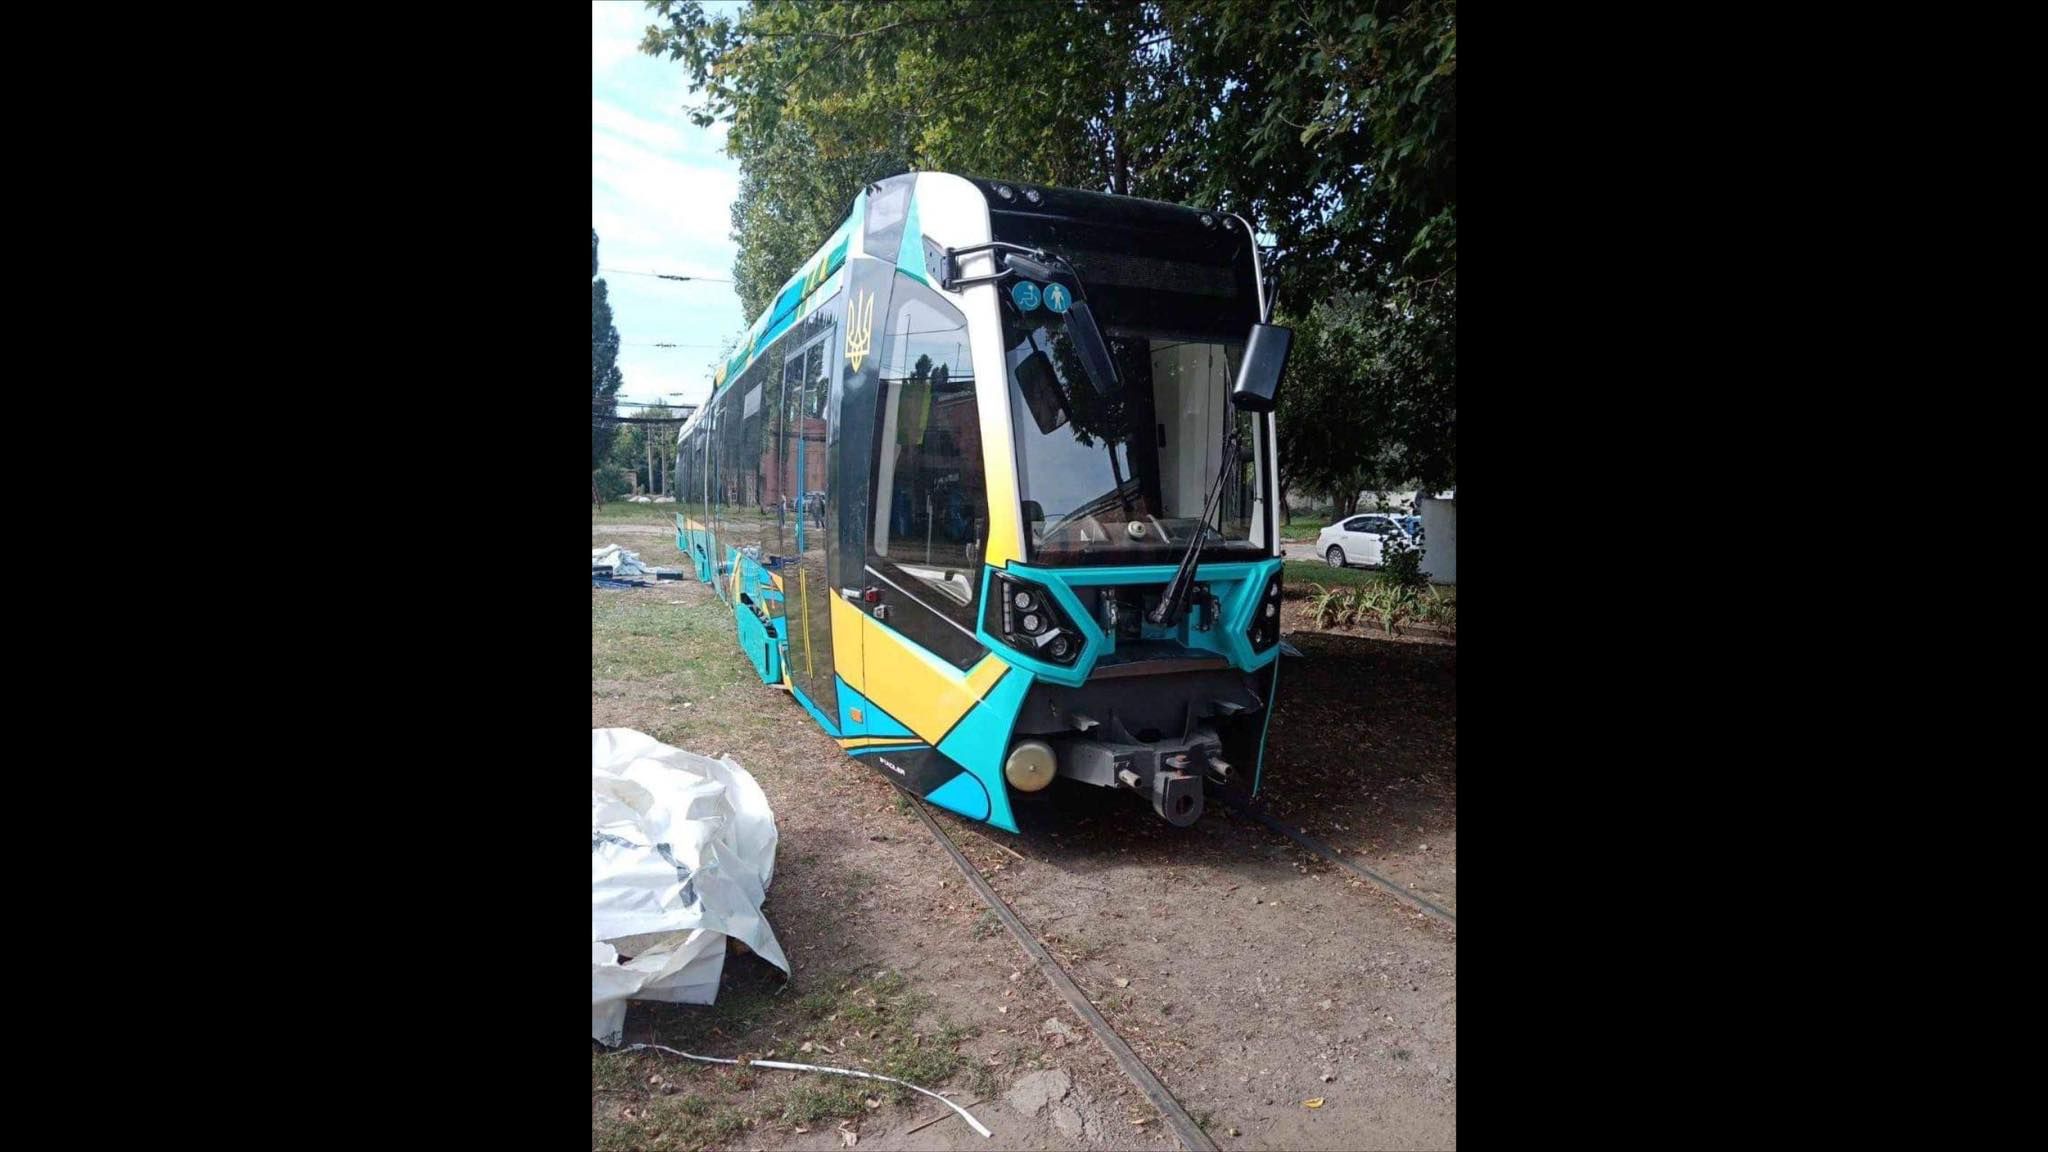 Харьков испытывает швейцарский трамвай Stadler - Инновации